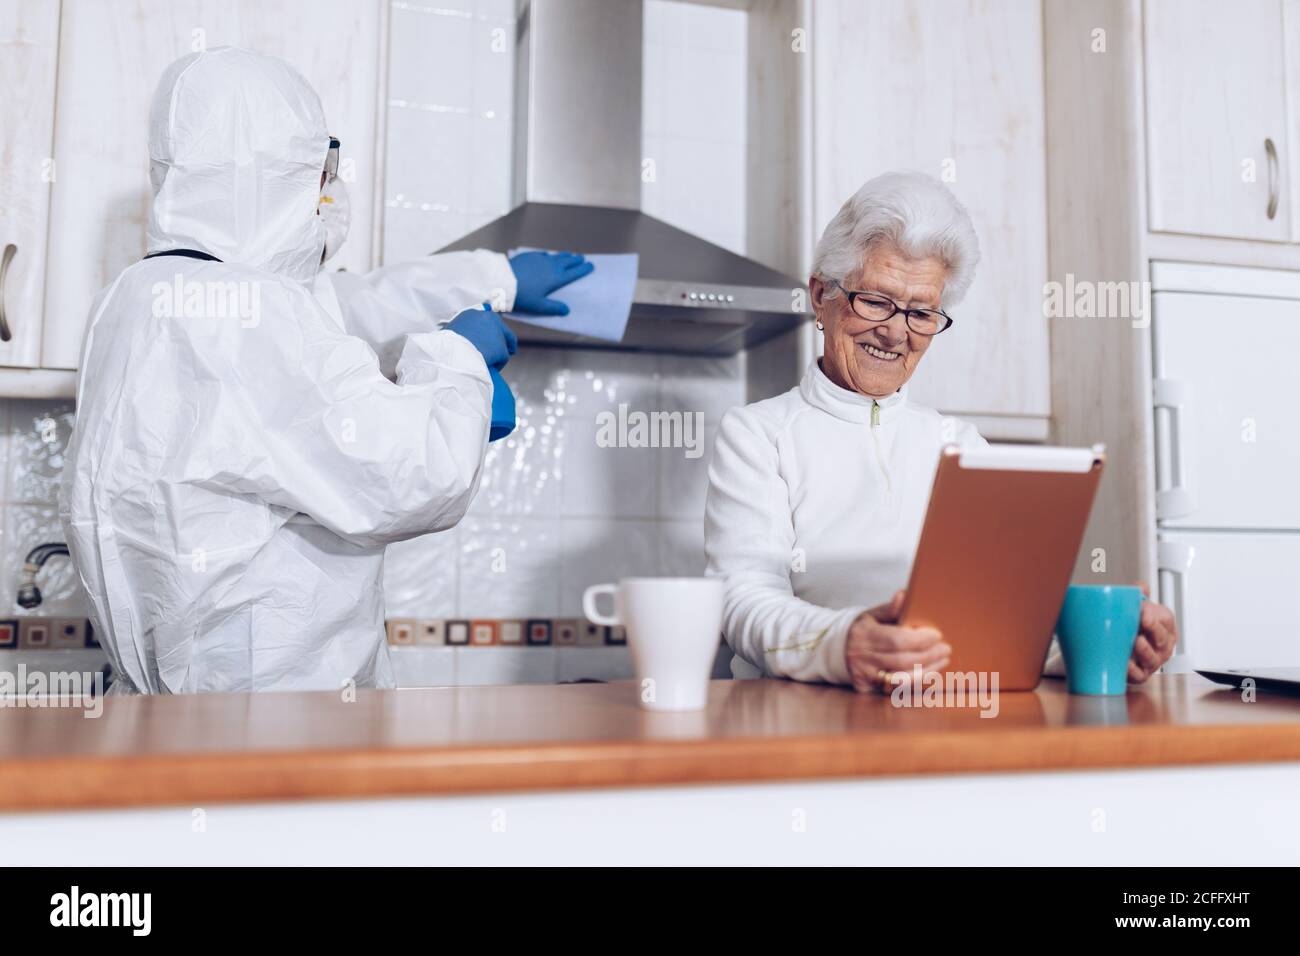 Irreconocible trabajador de atención domiciliaria en la cocina de limpieza uniforme de protección mientras alegre mujer anciana disfrutando de nuevo libro durante el autoaislamiento en casa debido a la pandemia de coronavirus Foto de stock